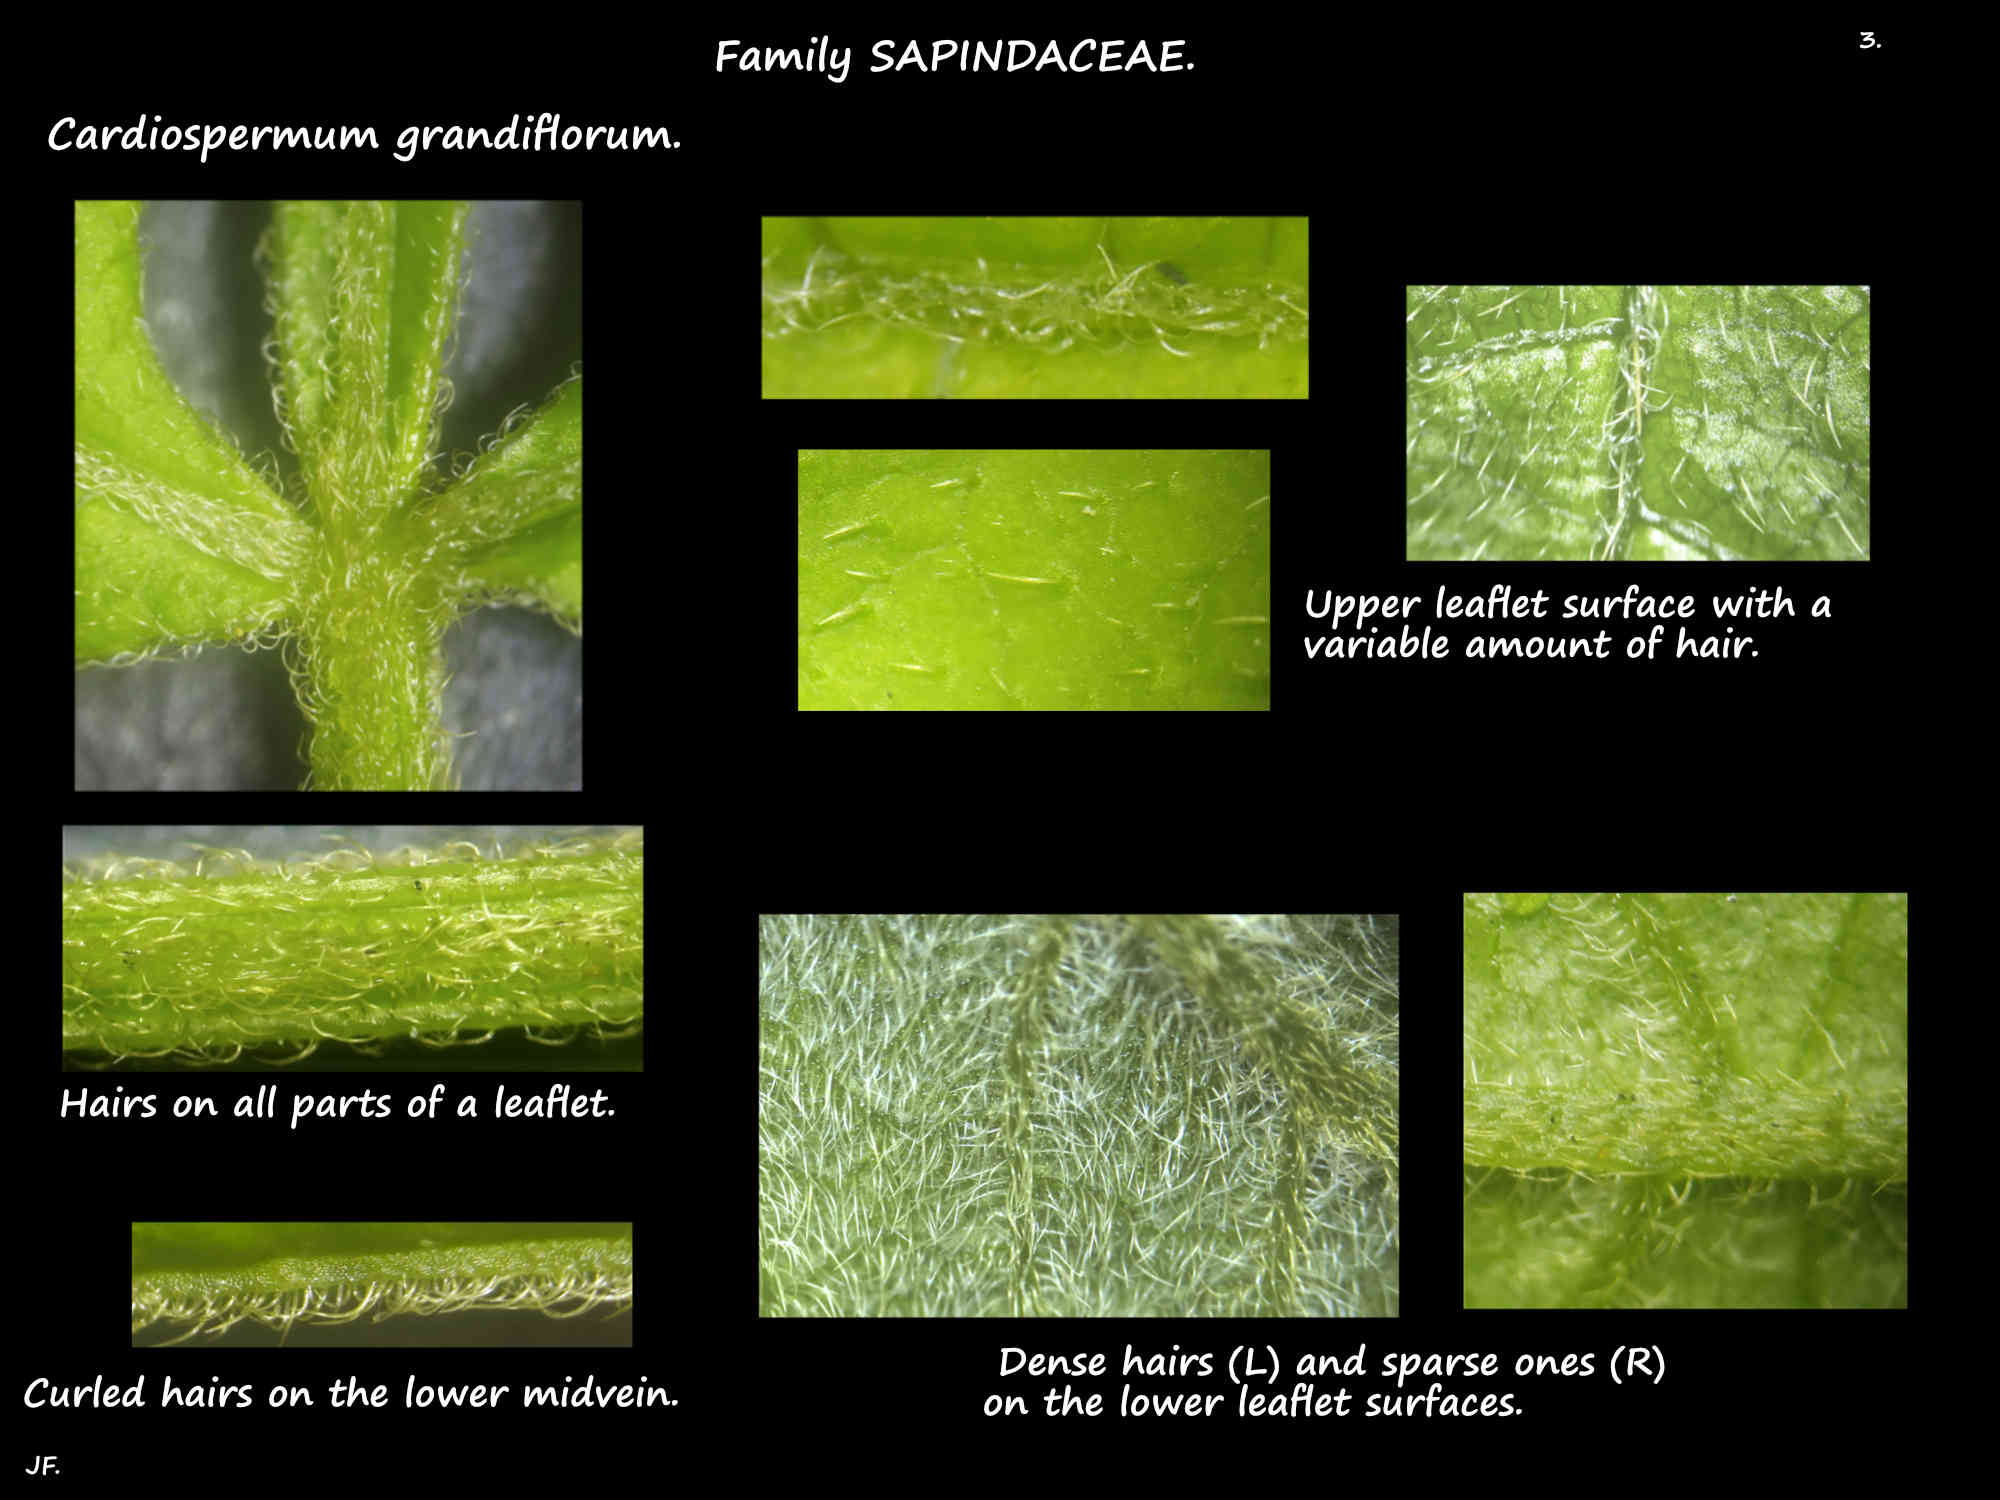 3 Cardiospermum grandiflorum leaf hairs